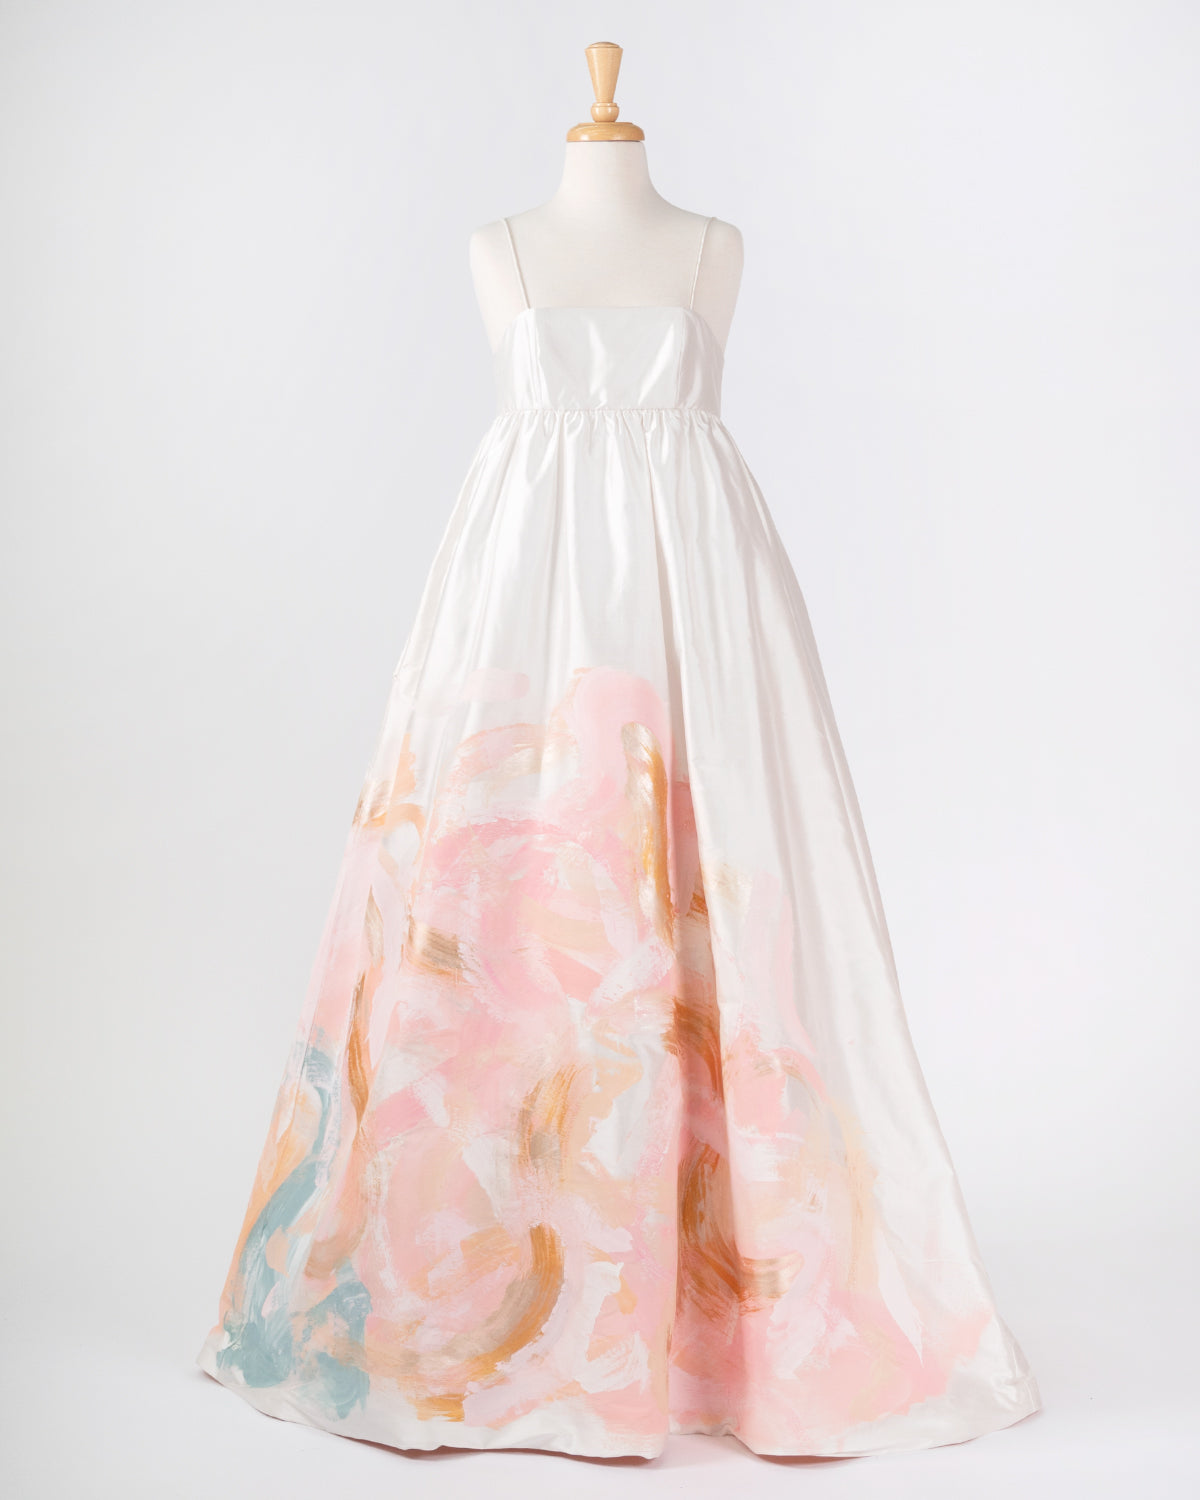 Magnolia Dress - Size 6 - Tiff Manuell